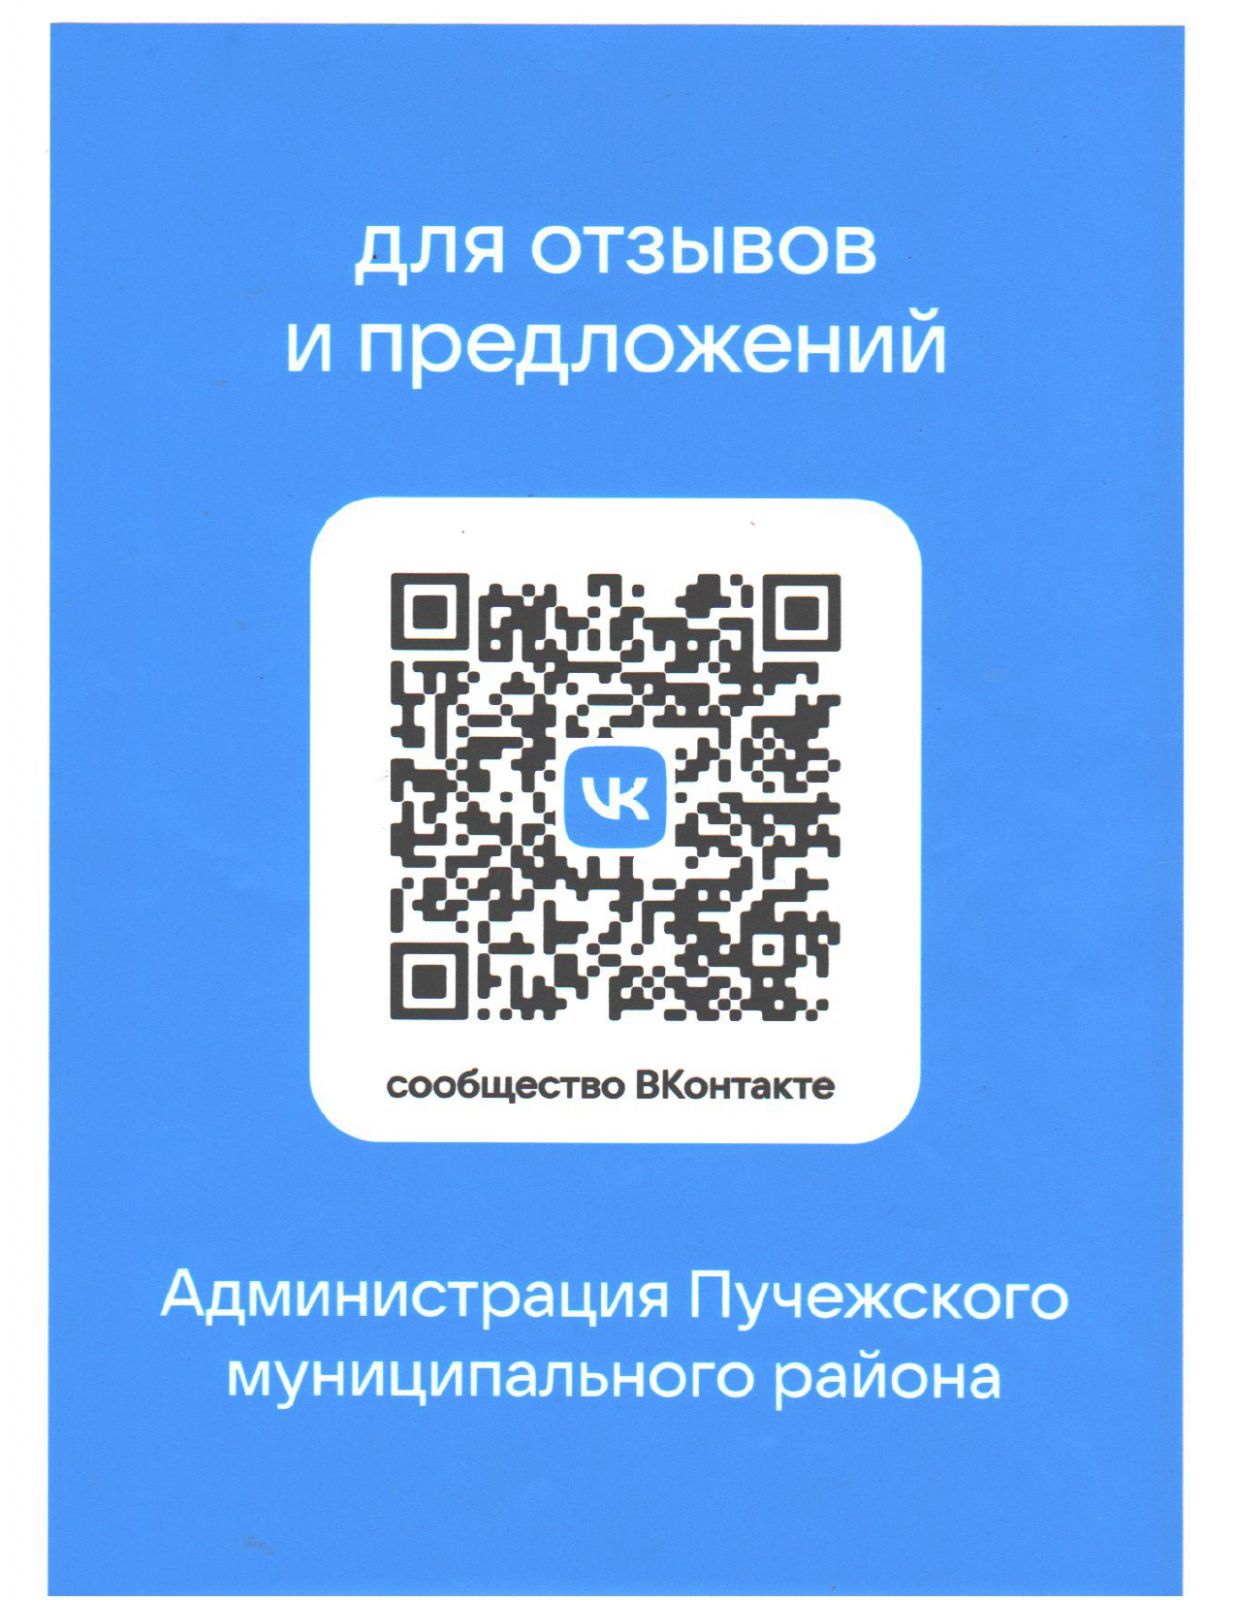 QR-код сообщество ВКонтакте